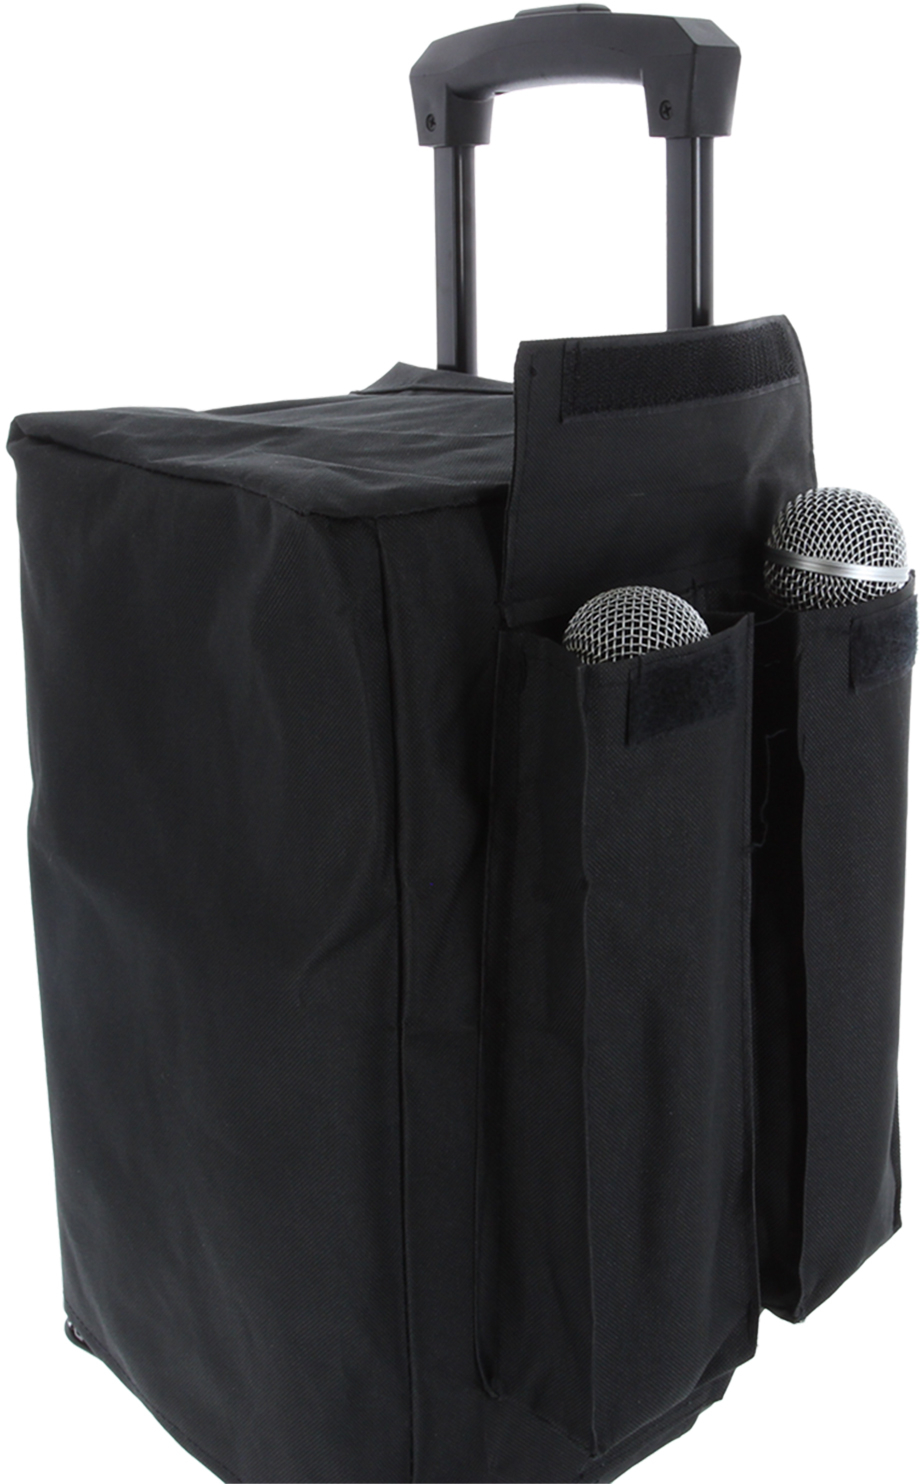 Power Acoustics Bag Taky 8 - Tasche für Lautsprecher & Subwoofer - Variation 3